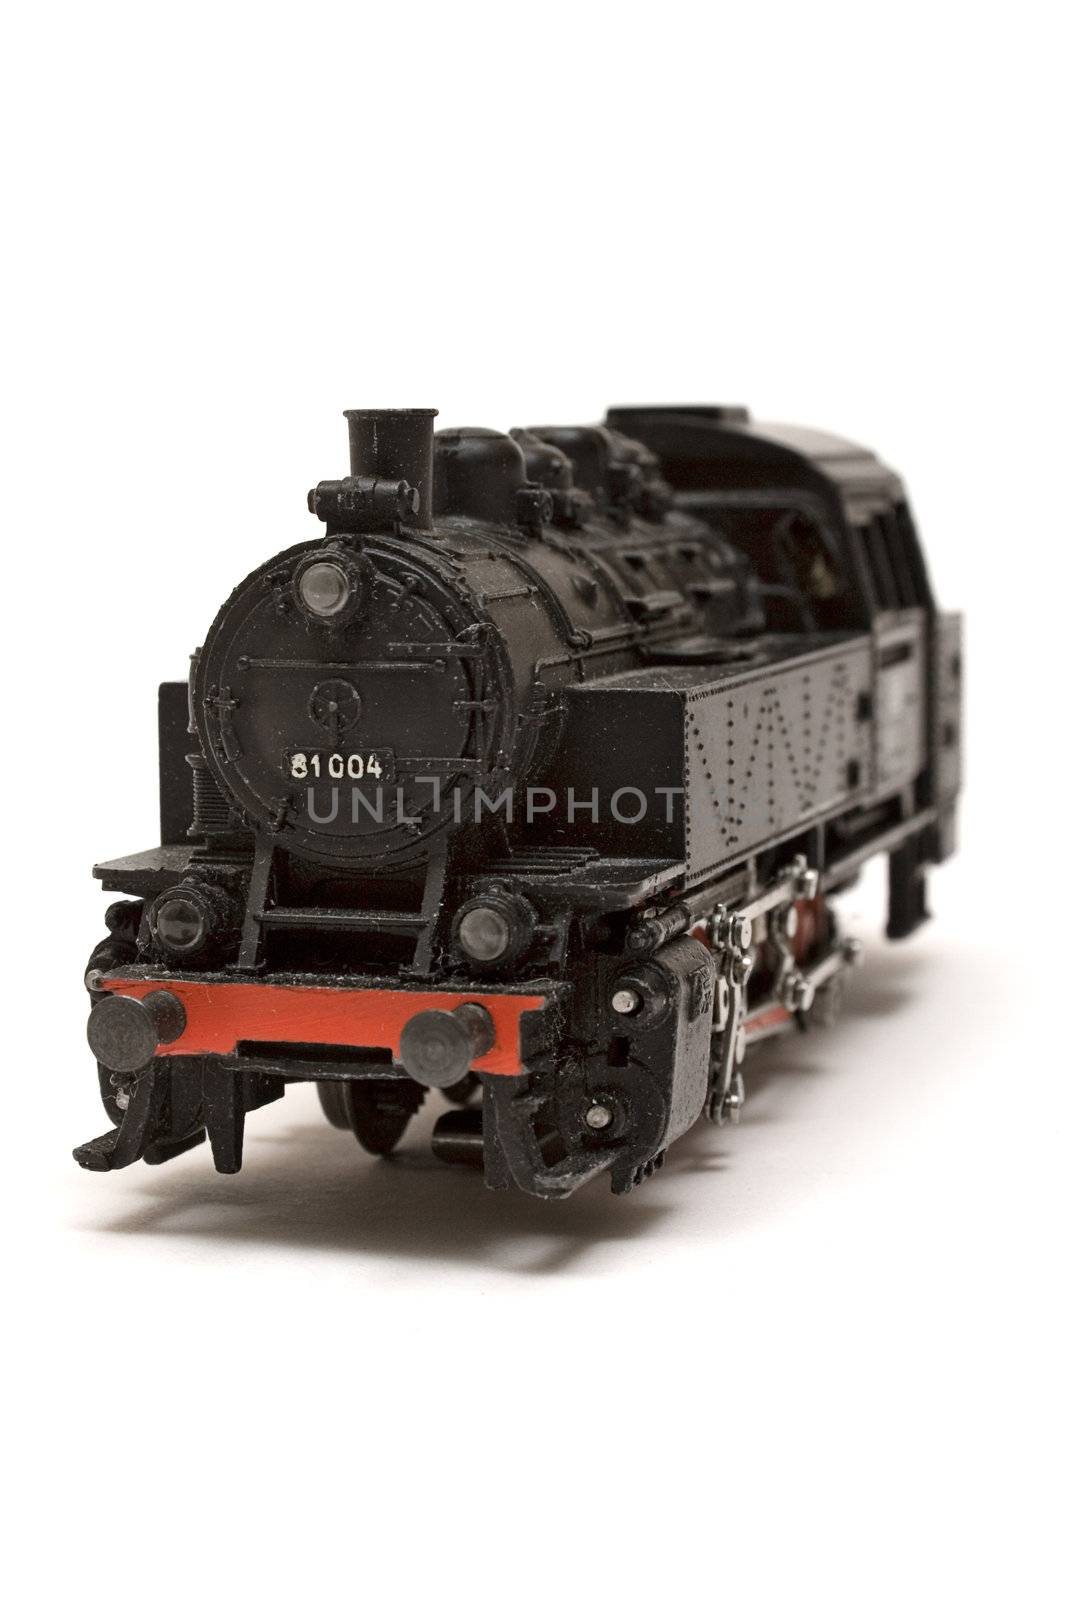 Locomotive Model by winterling